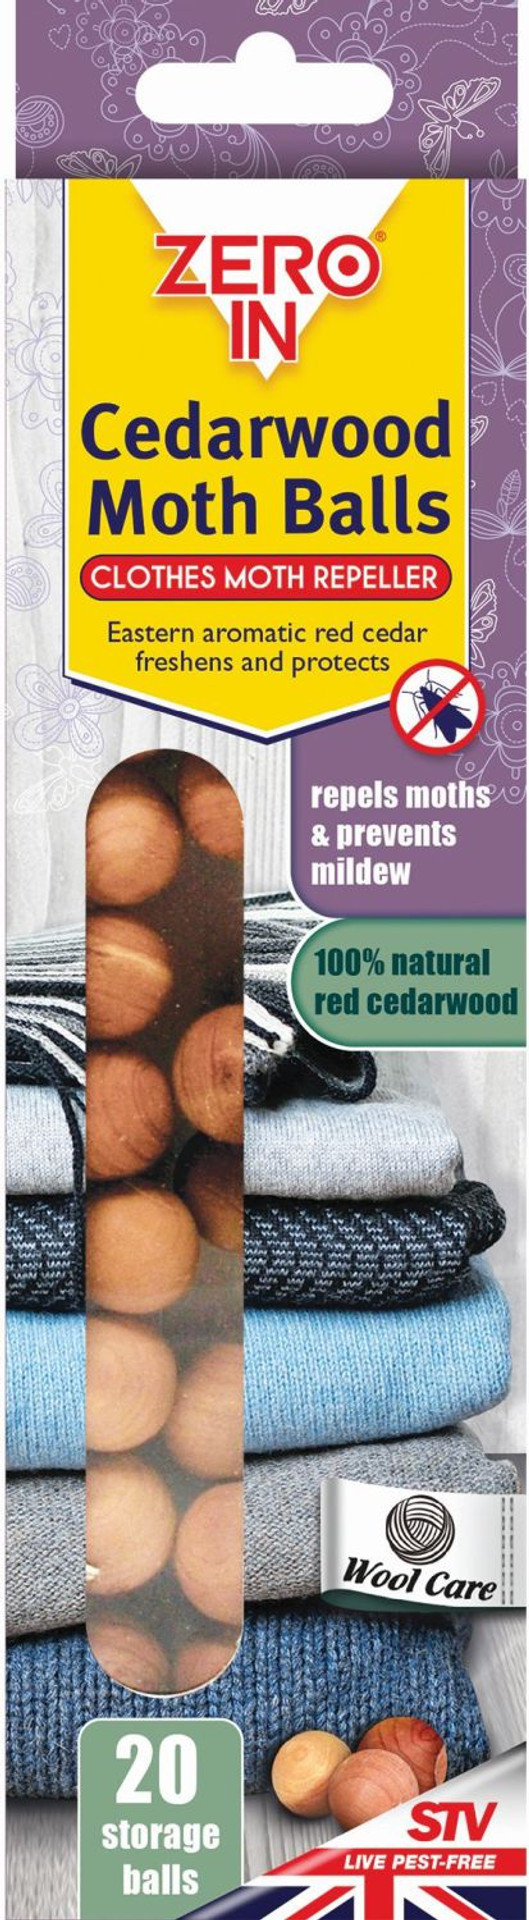 Cedarwood Moth Balls - 20 Balls - Zero In Official Manufacturer